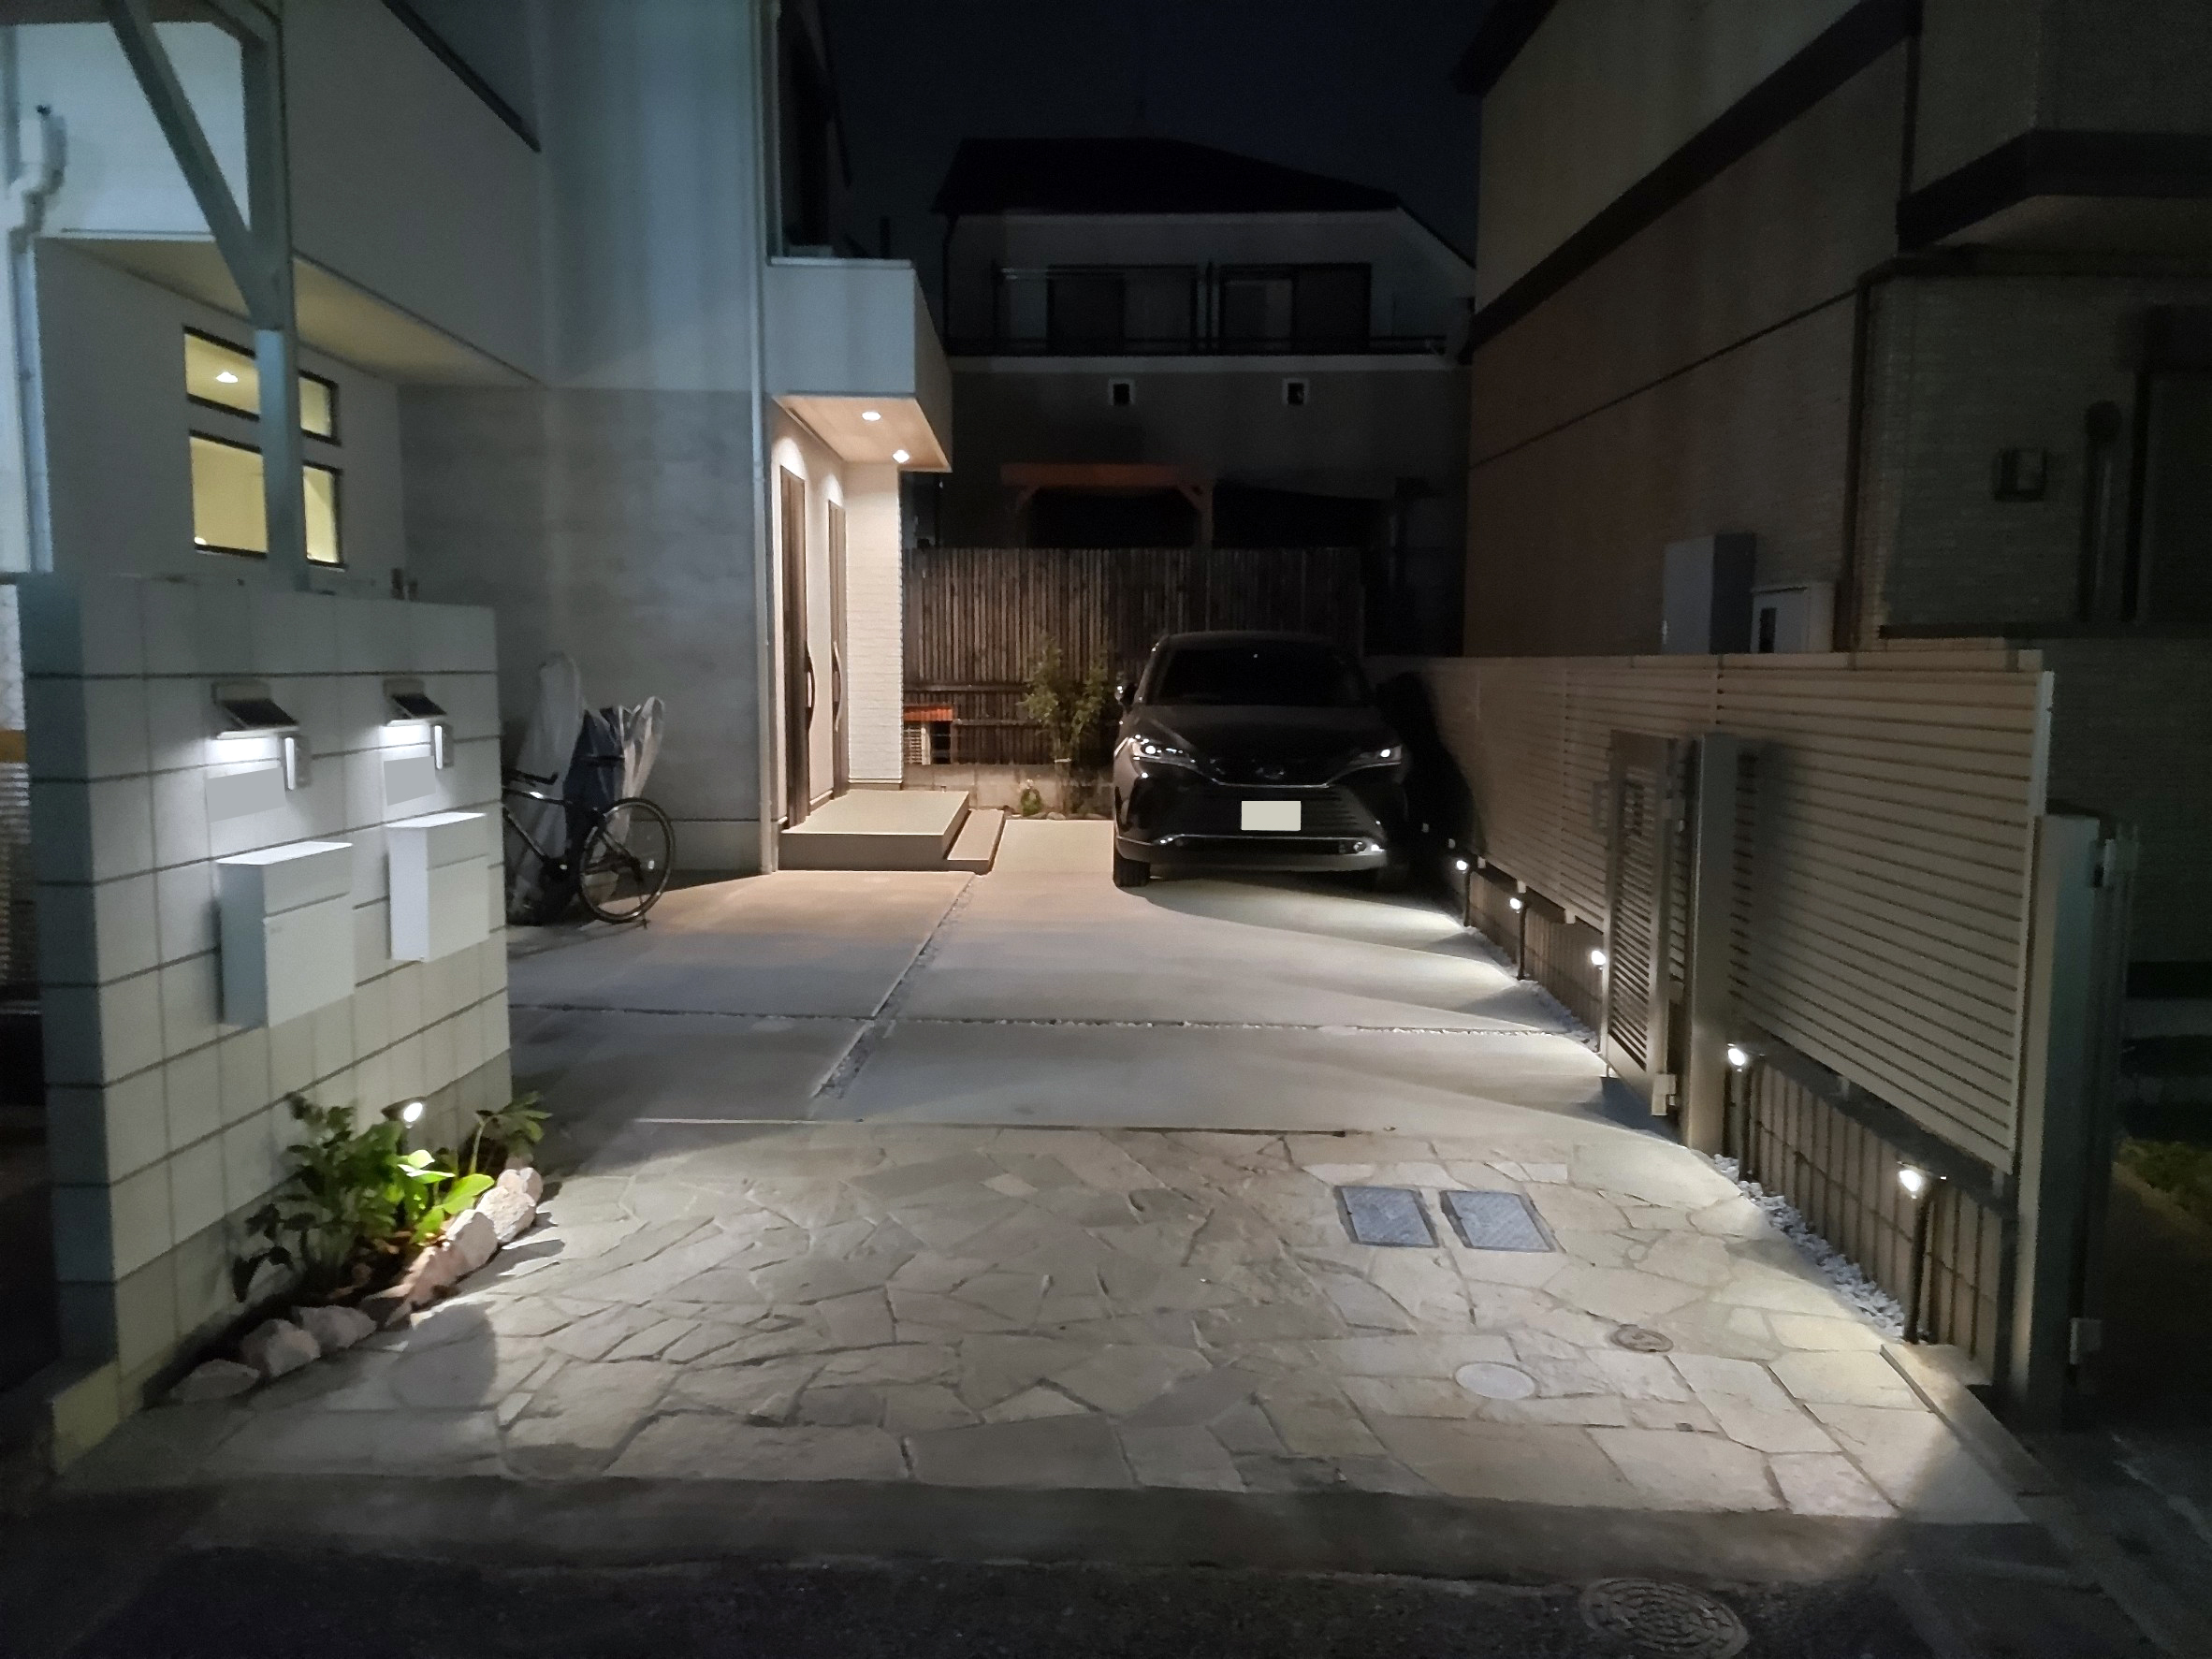 東京都世田谷区桜上水のMさん施工現場のアフター画像2/外水道は立水栓にした画像